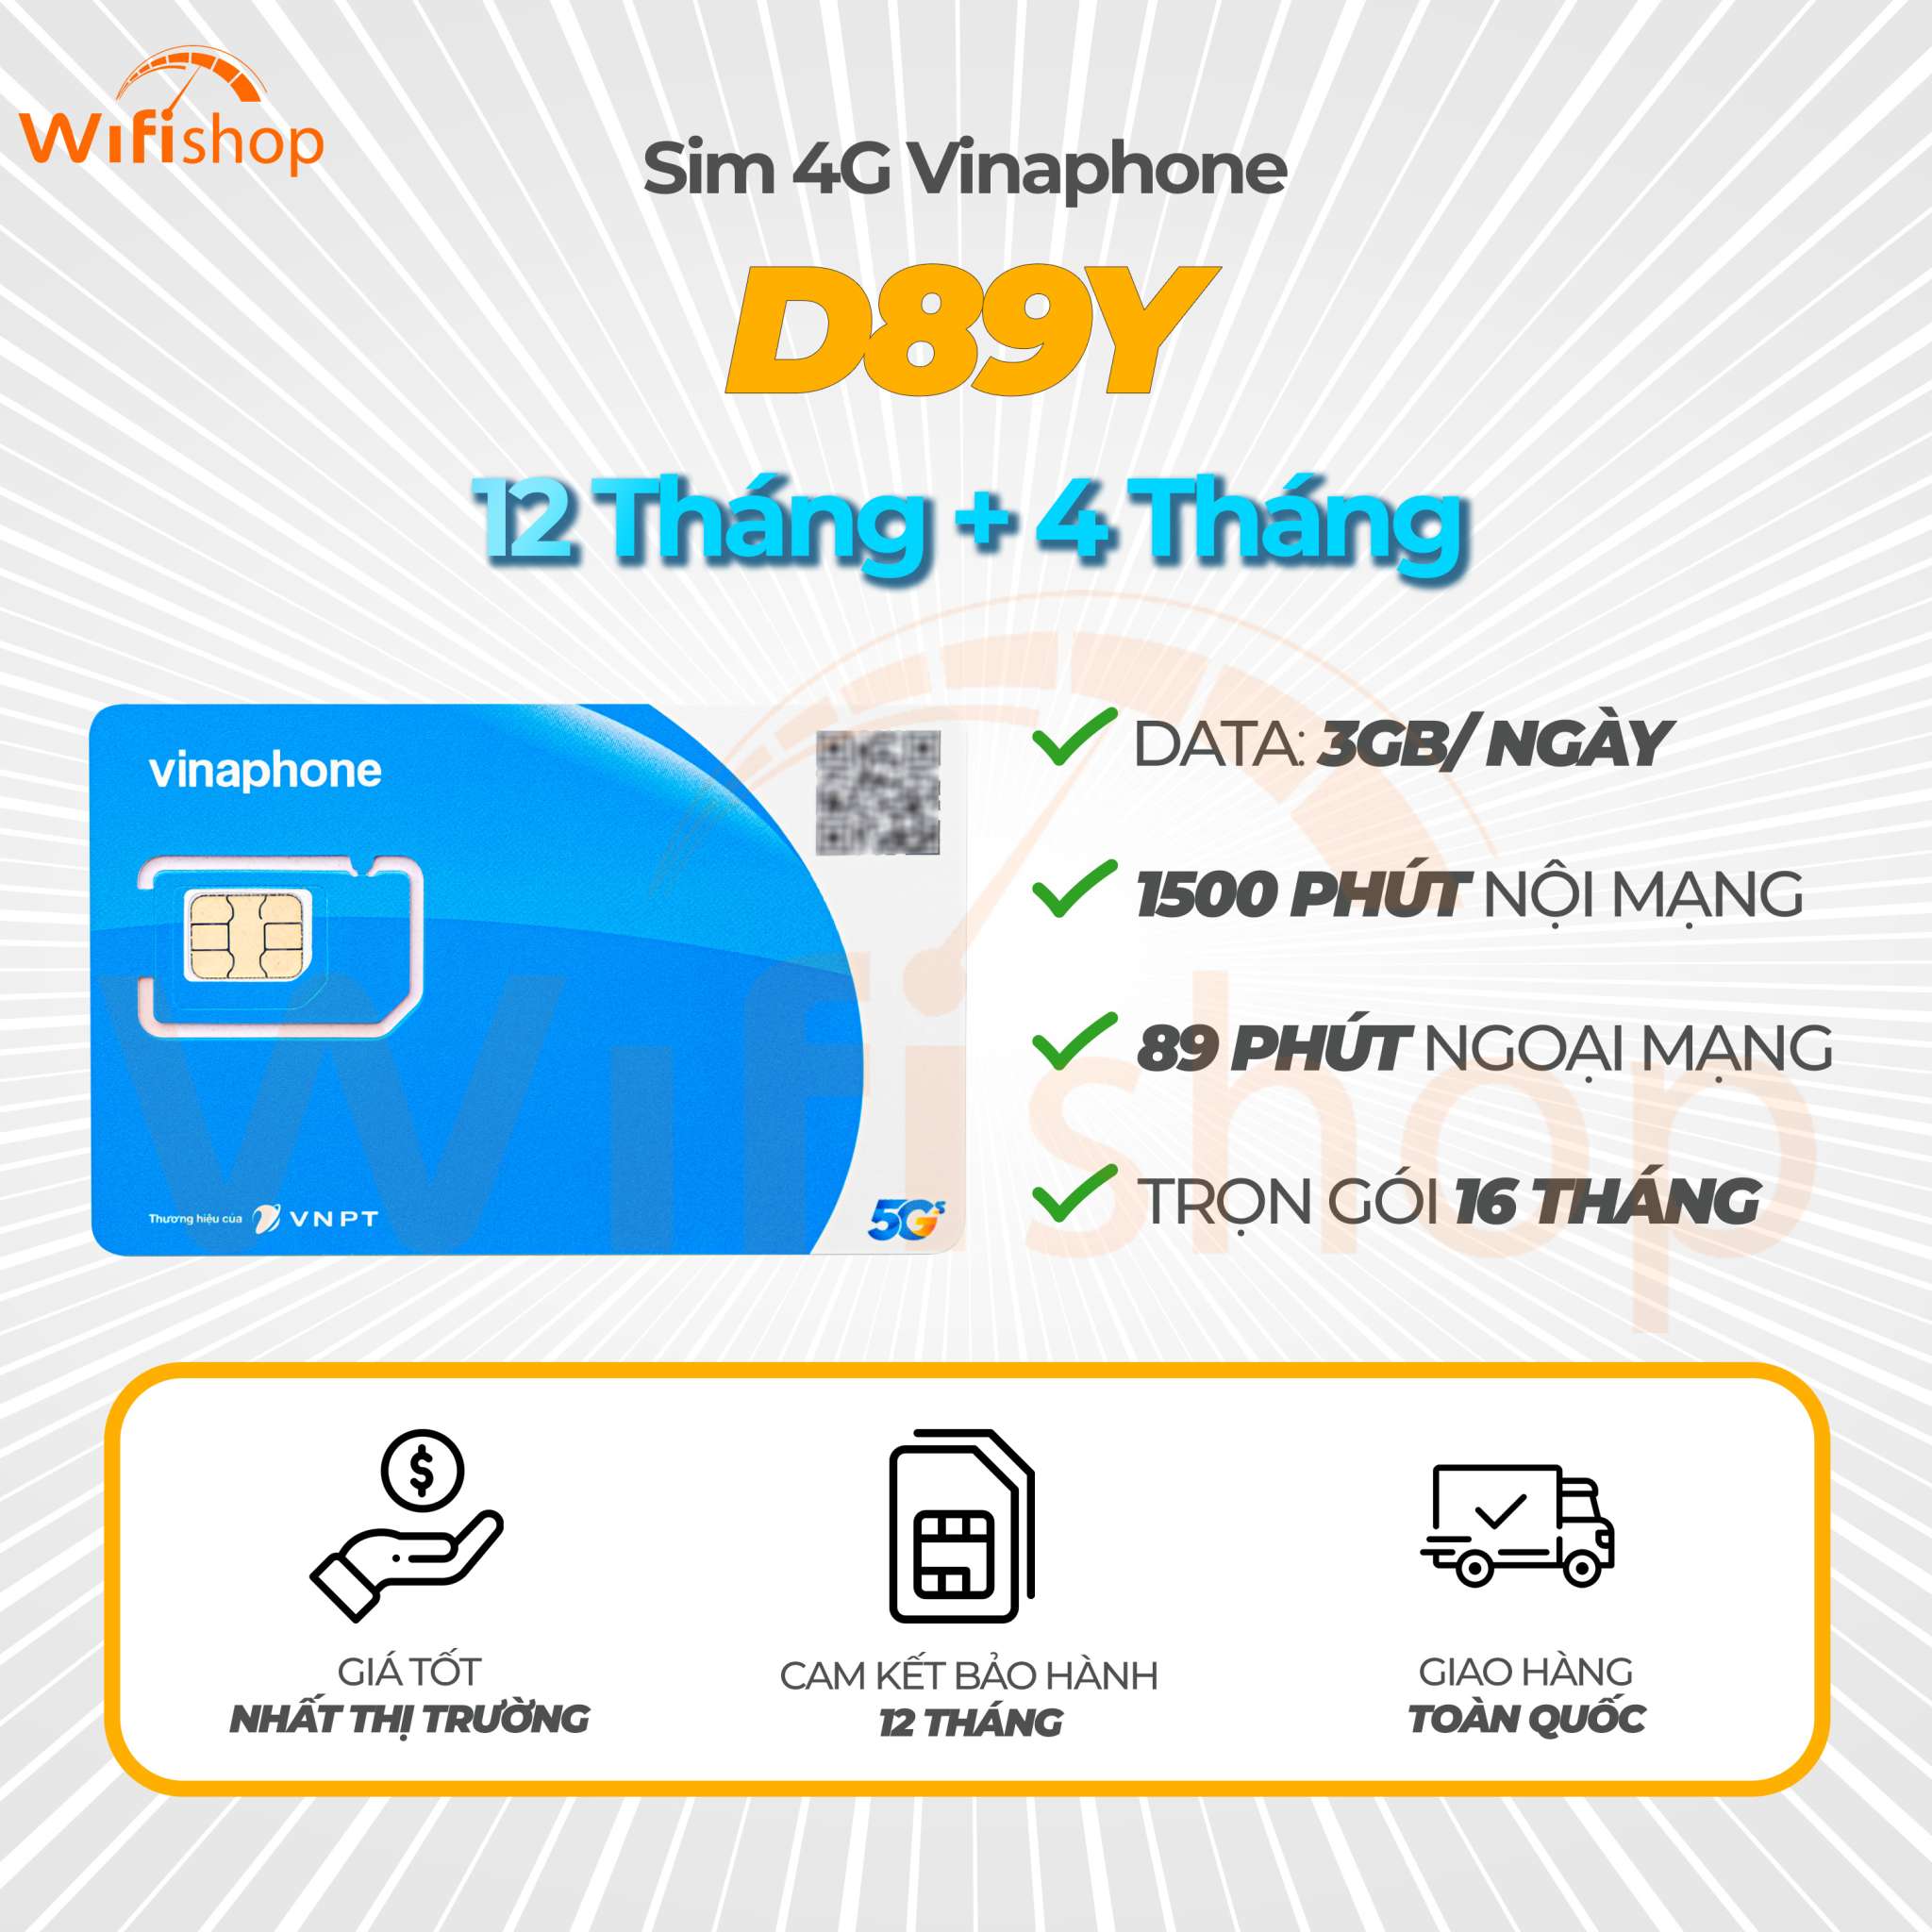 Sim 4G Vinaphone D89Y 3GB/ ngày, miễn phí 1500 phút nội mạng + 89 phút ngoại mạng, 16 tháng không nạp tiền